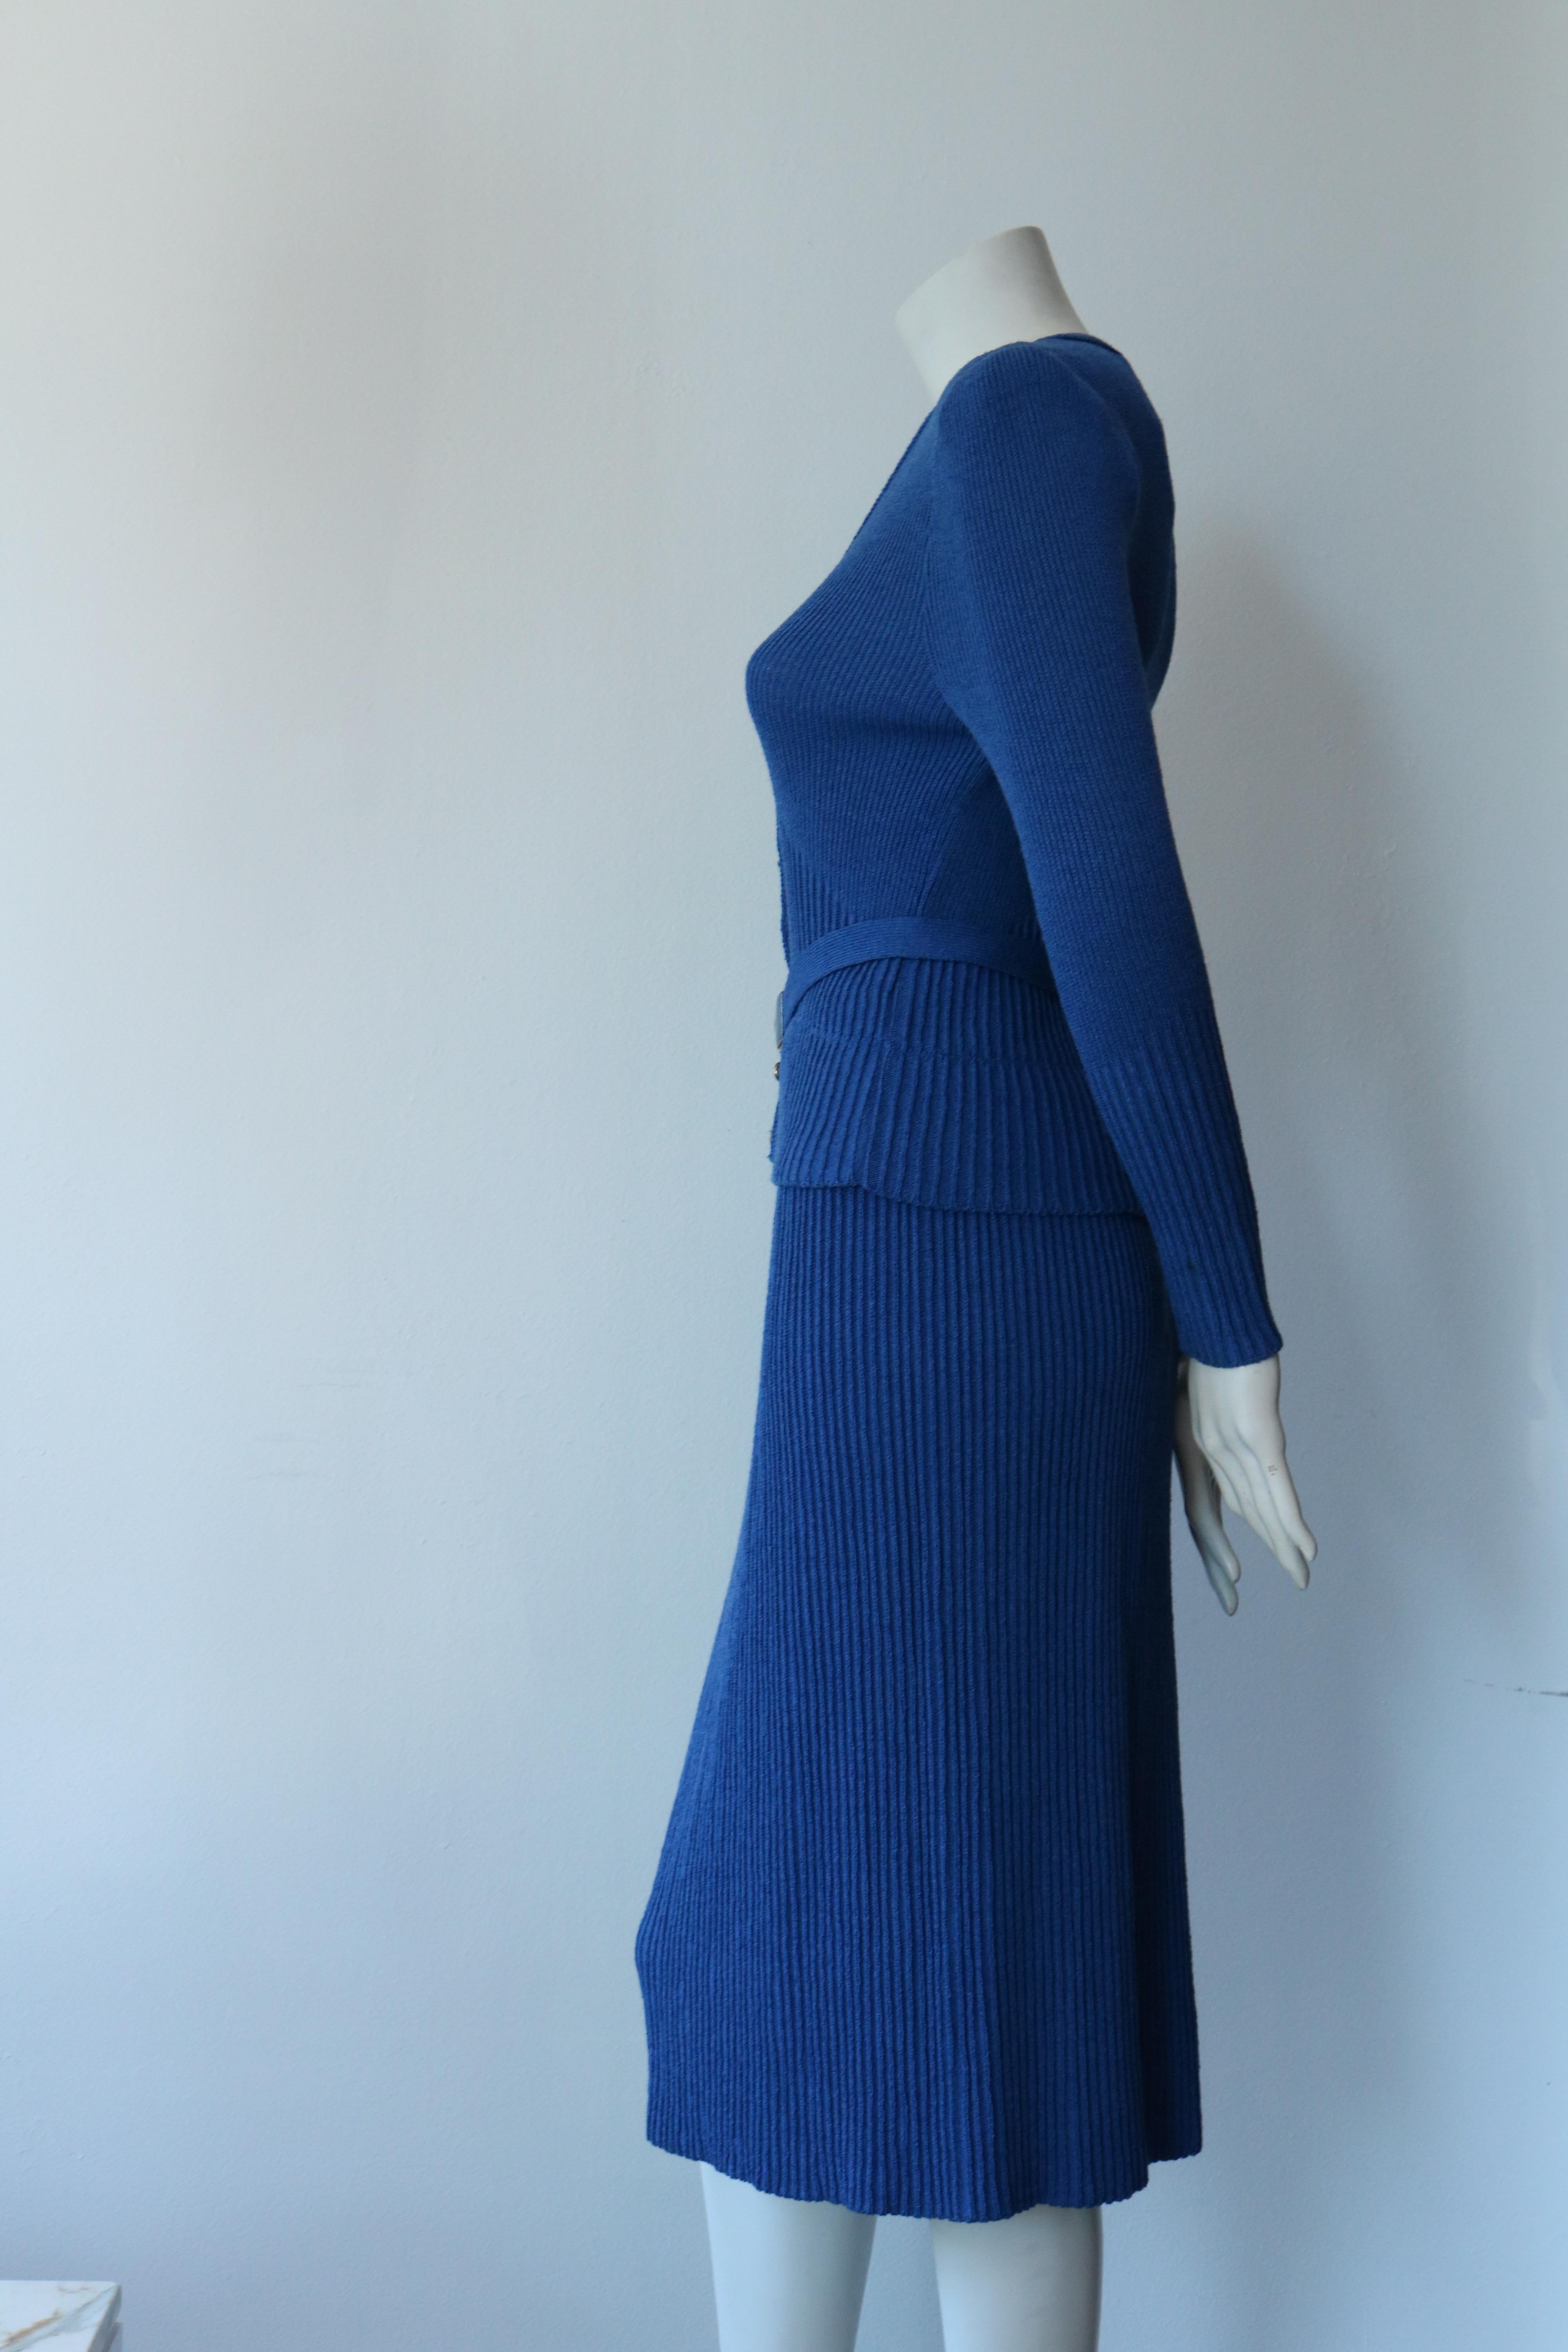 Women's or Men's Oscar De La Renta Knit Suit  